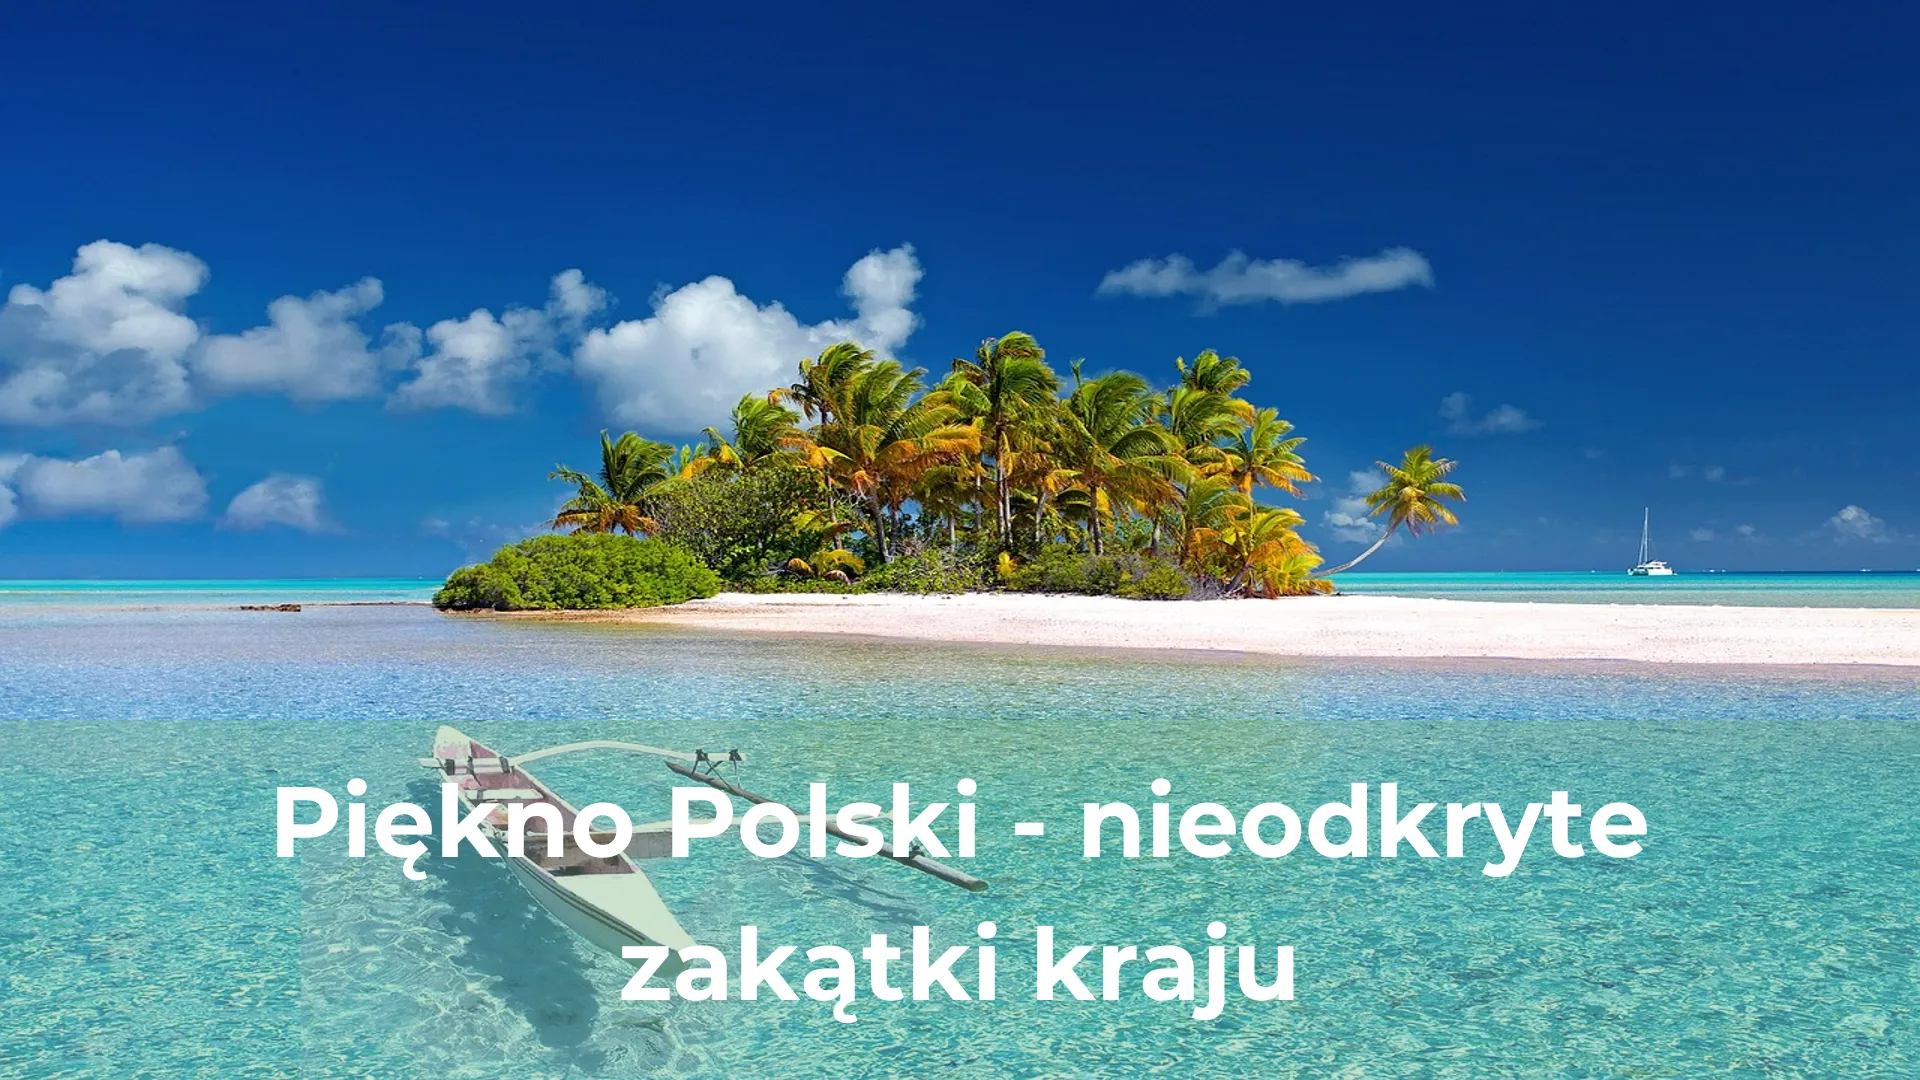 Piękno polski nieodkryte zakątki kraju